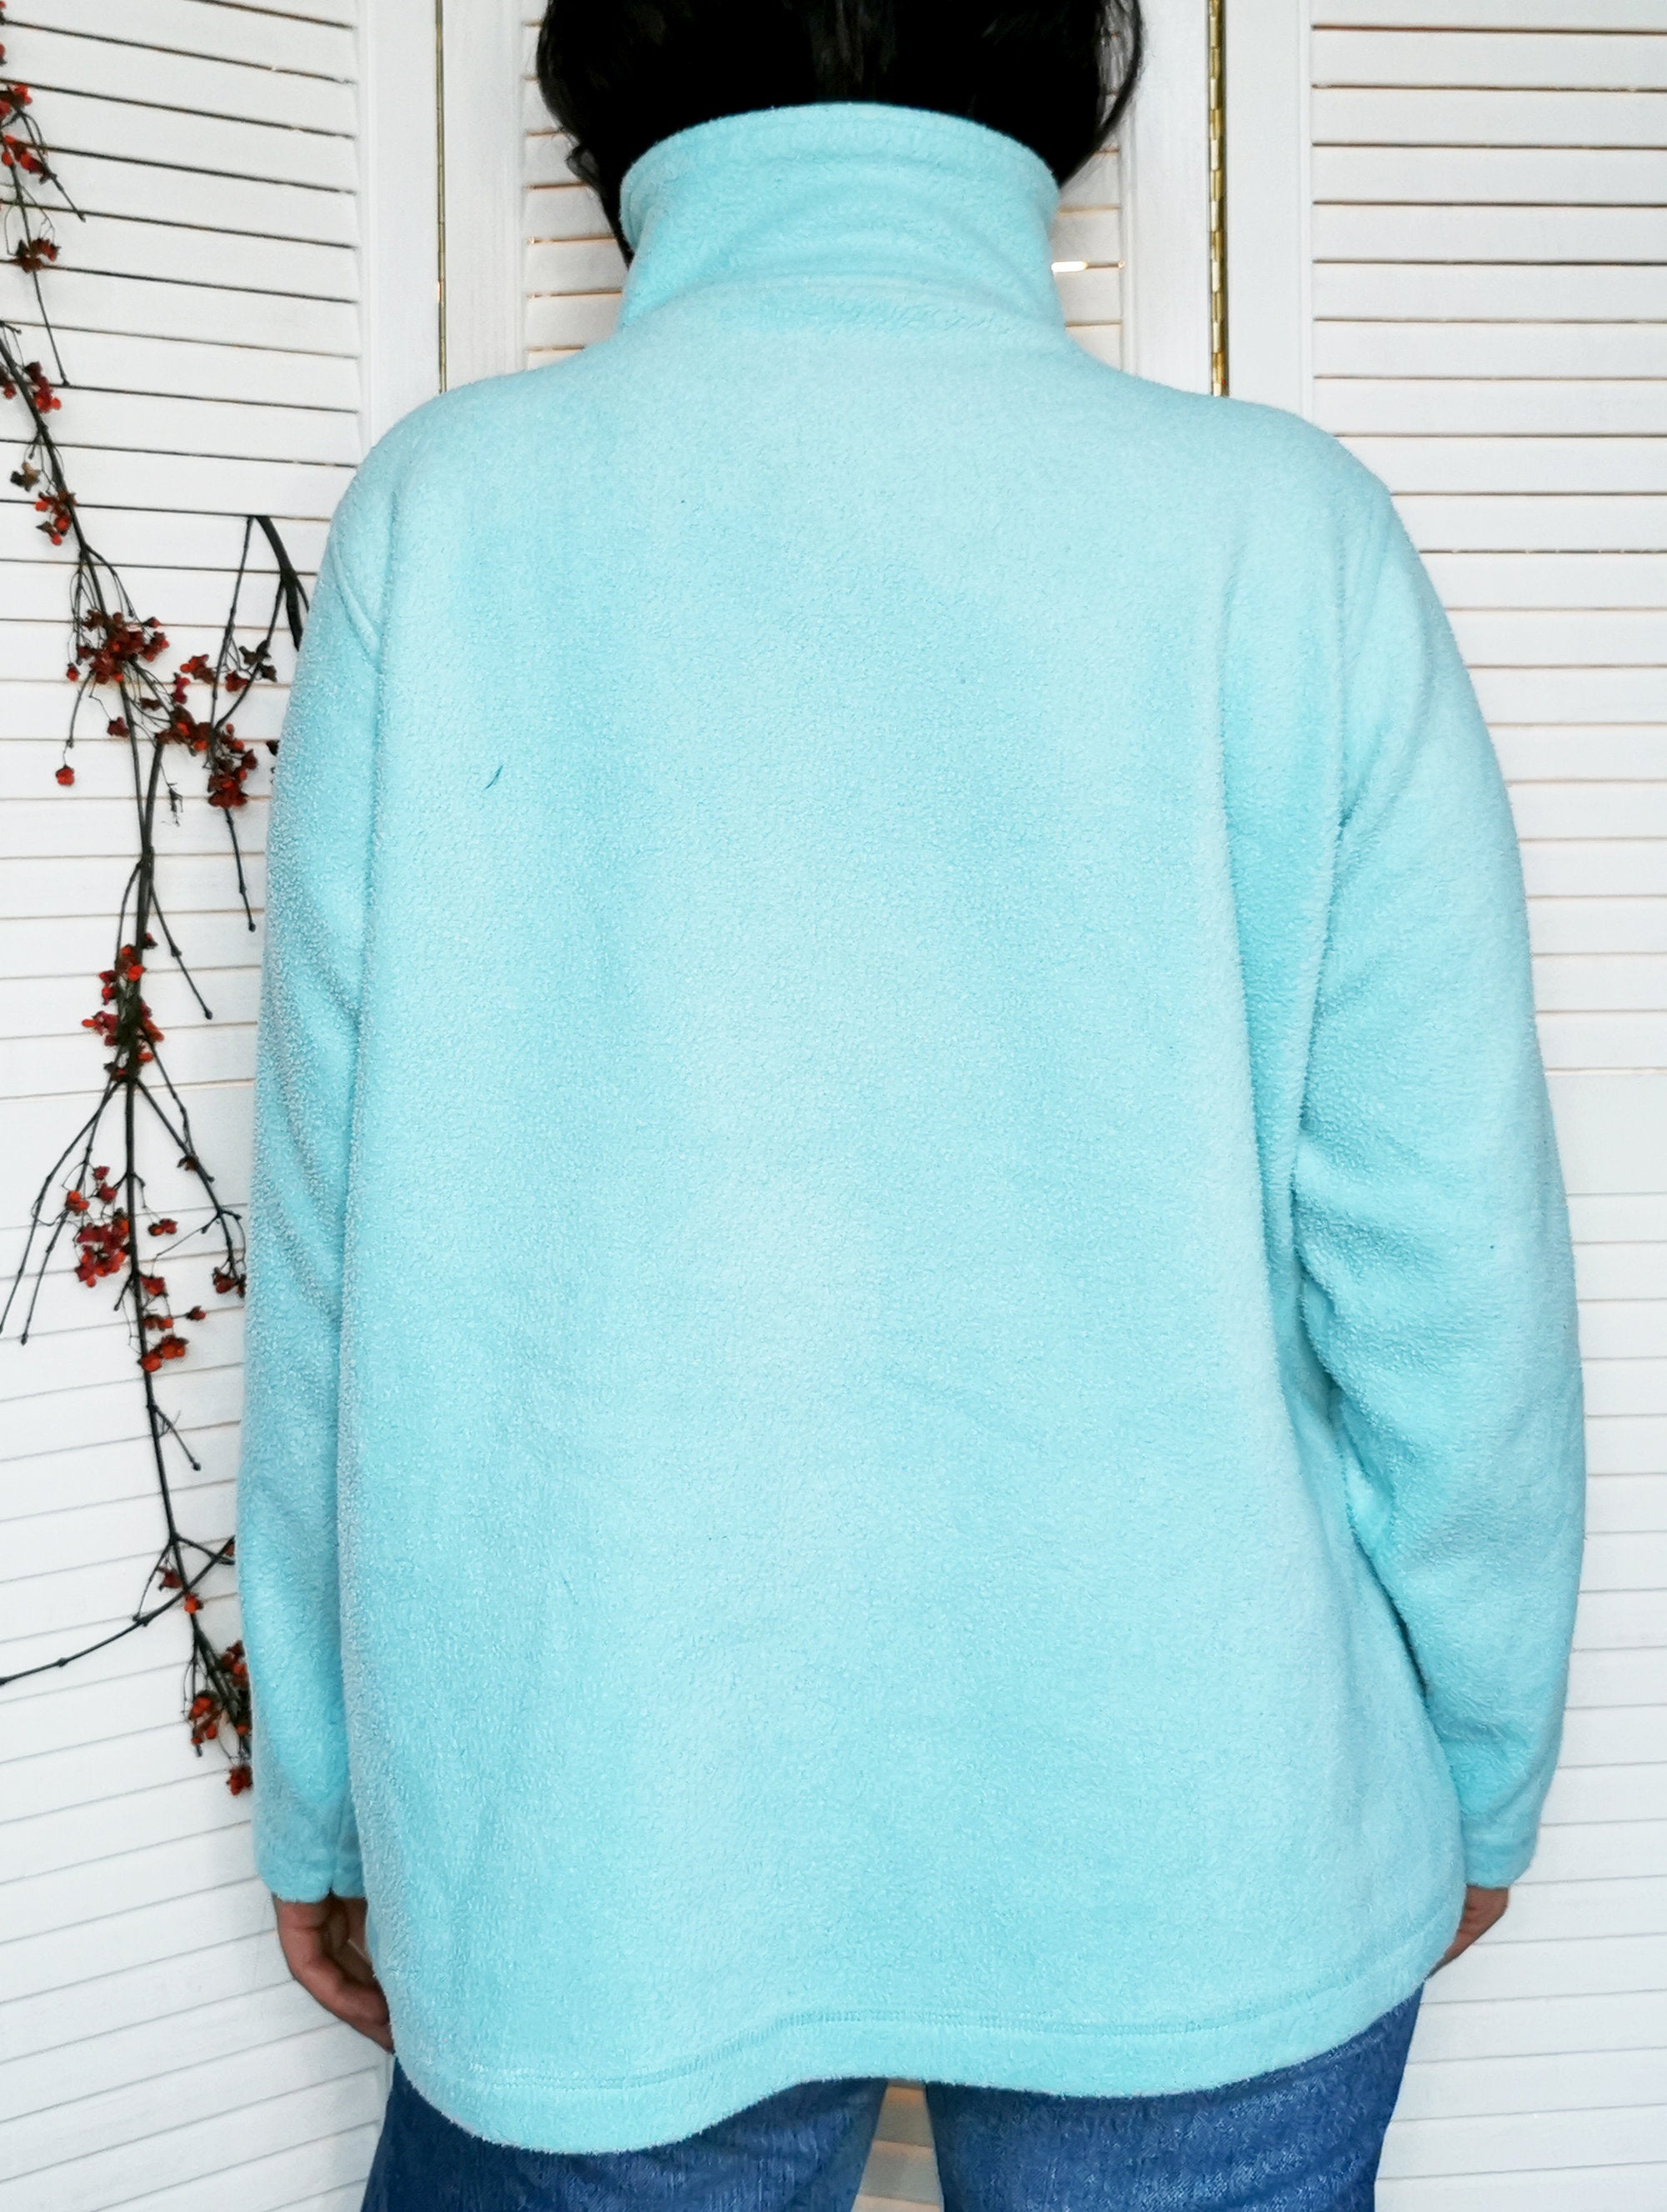 Vintage 90s 1/4 zip baby blue fleece oversize sweatshirt